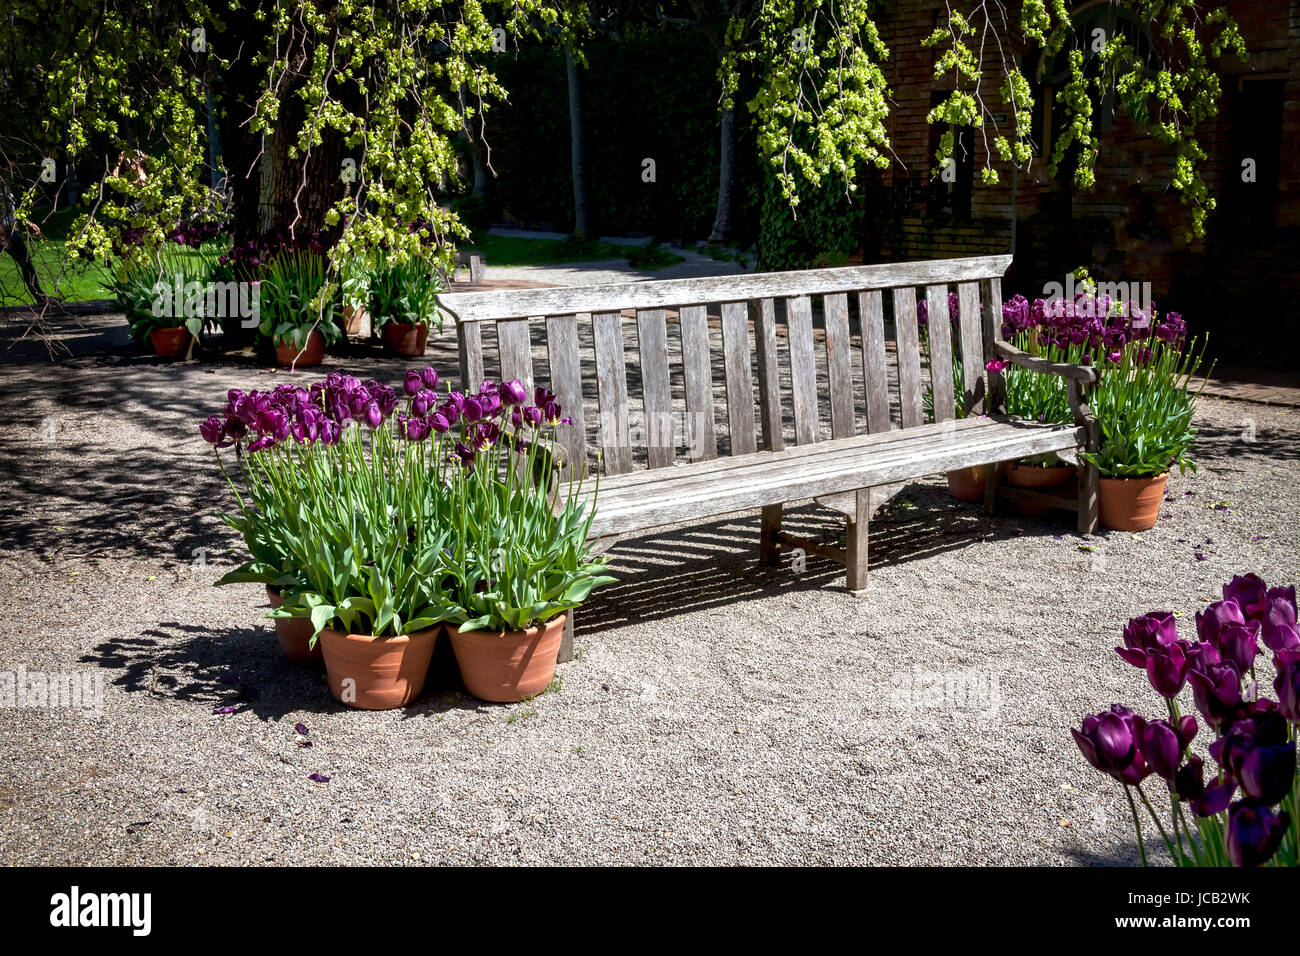 Este banco está ubicado en un jardín botánico formal. El jardín florido recién destacados tulipanes púrpura que pueden encontrarse por todo el parque. Foto de stock